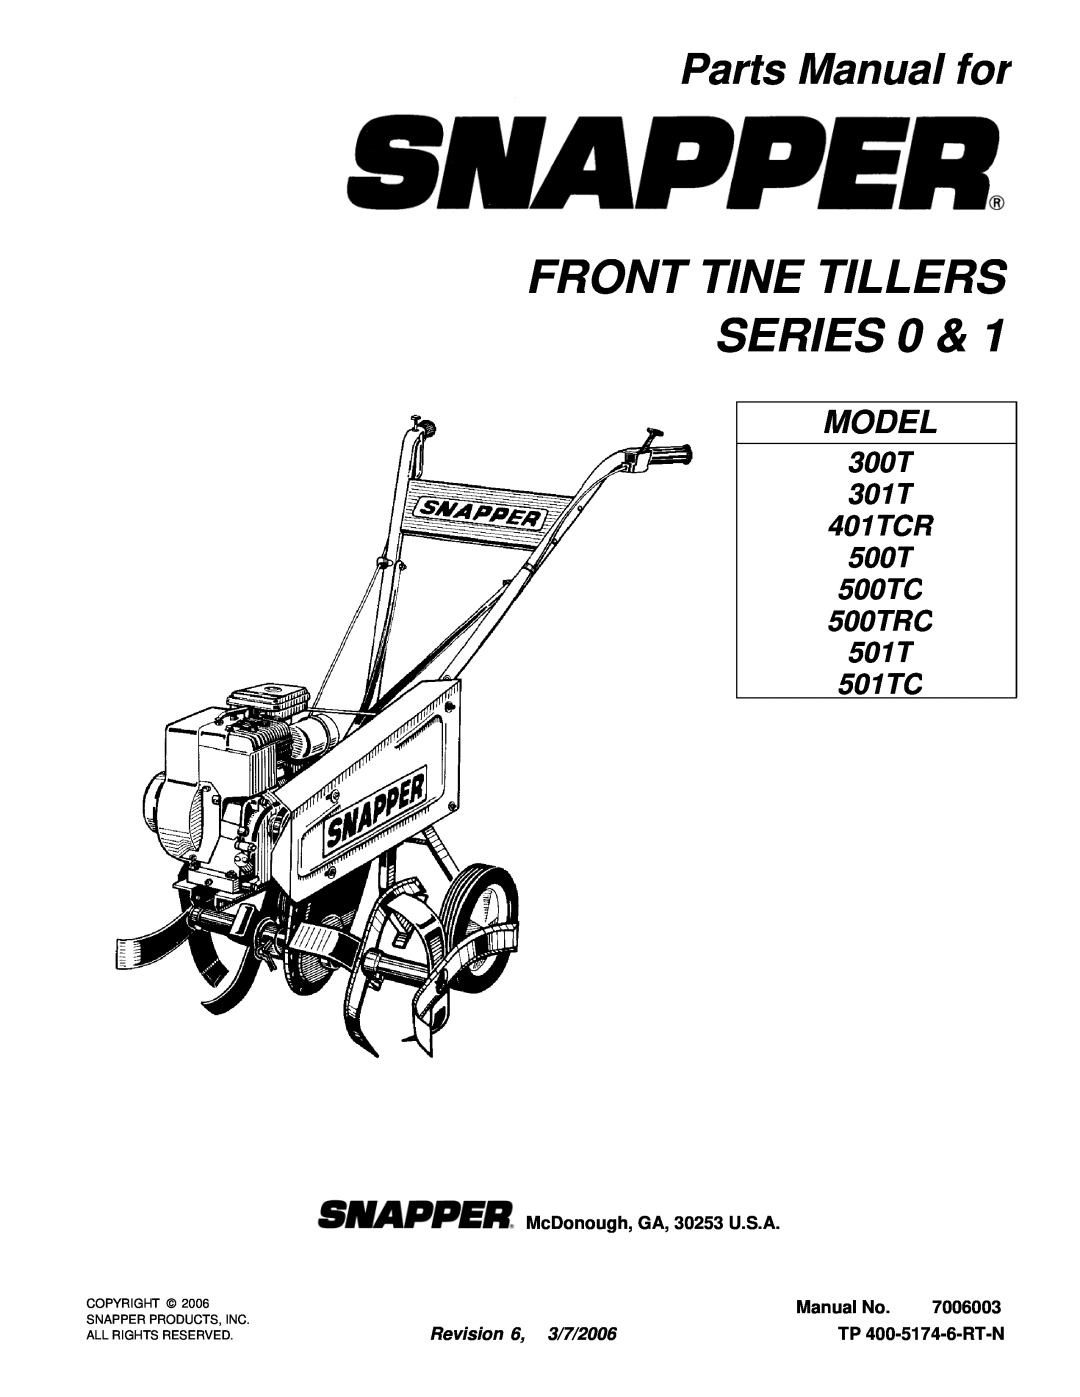 Snapper 501TC manual Parts Manual for, McDonough, GA, 30253 U.S.A, Manual No, 7006003, Revision 6, 3/7/2006, Model 